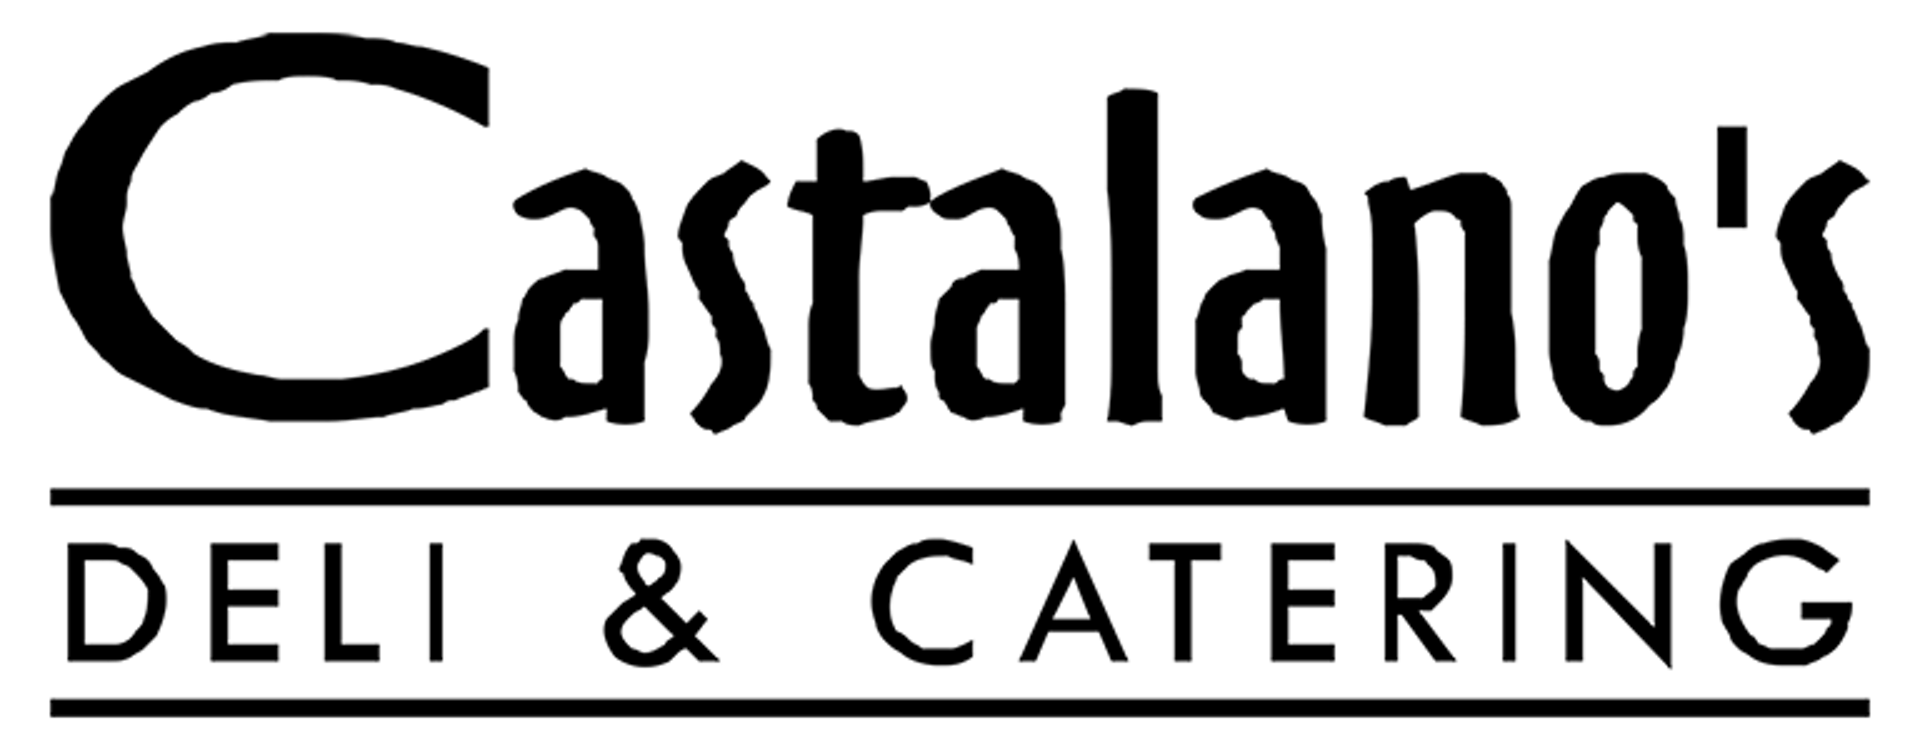 Castalano's Deli & Catering